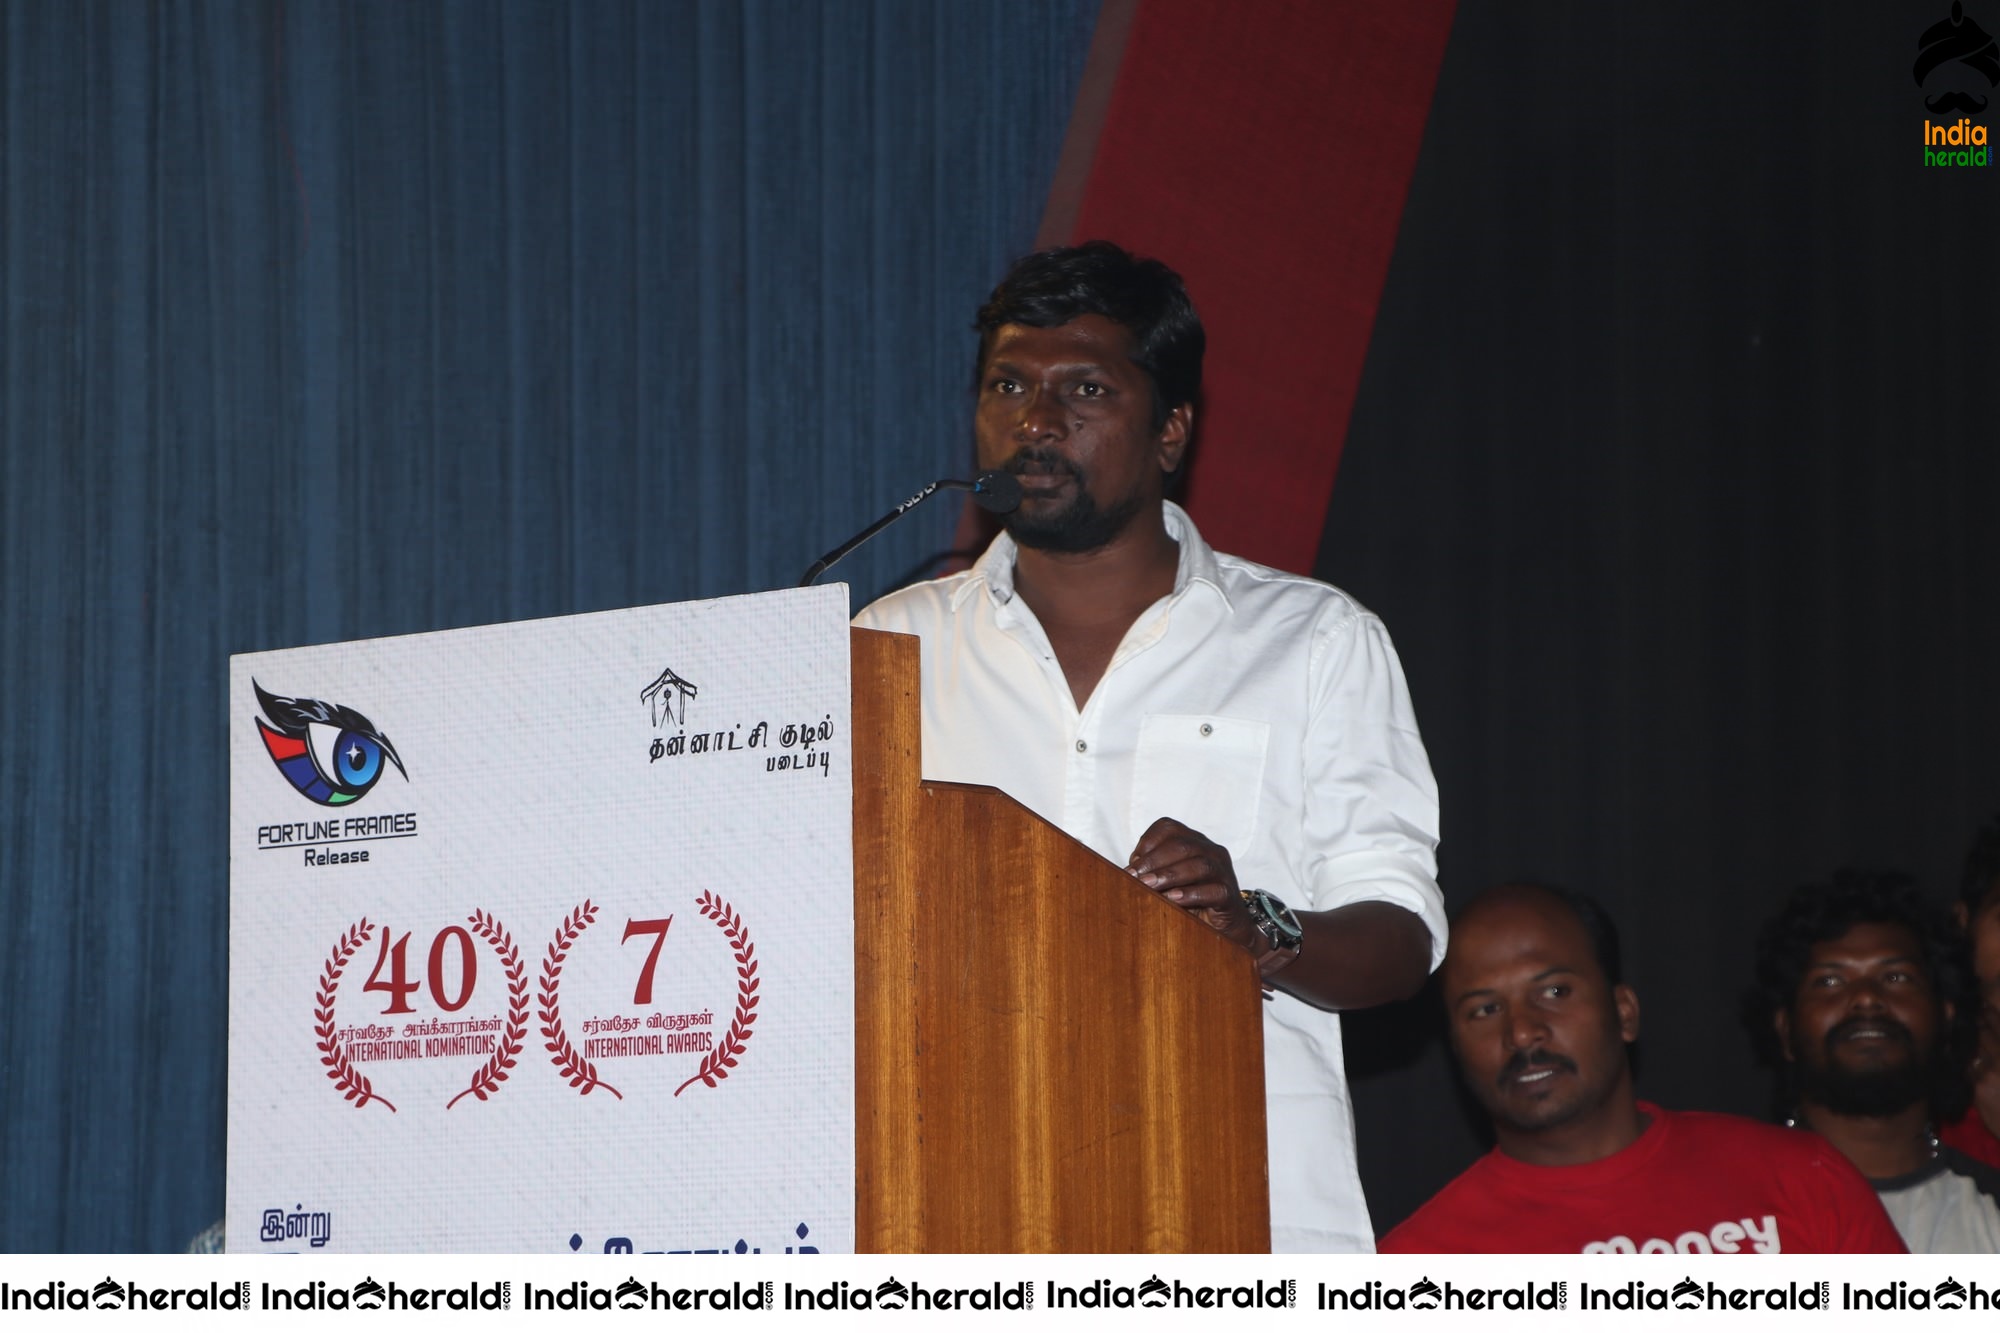 Gnanacherukku Tamil Movie Audio Launch Stills Set 2